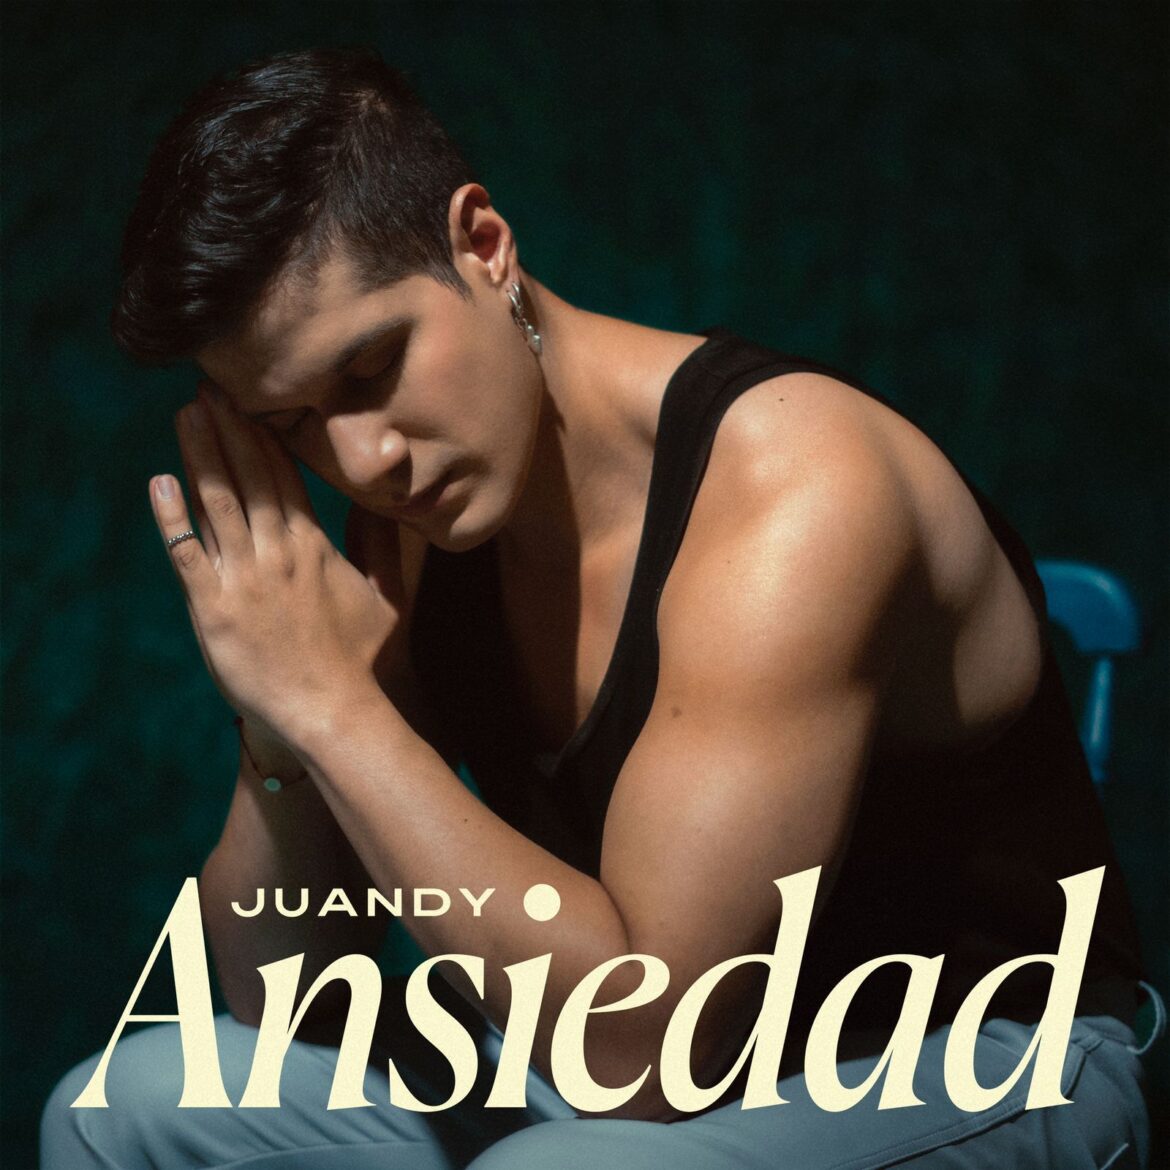 ”Ansiedad” el nuevo sencillo de Juandy en honor a la tranquilidad y Salud Mental